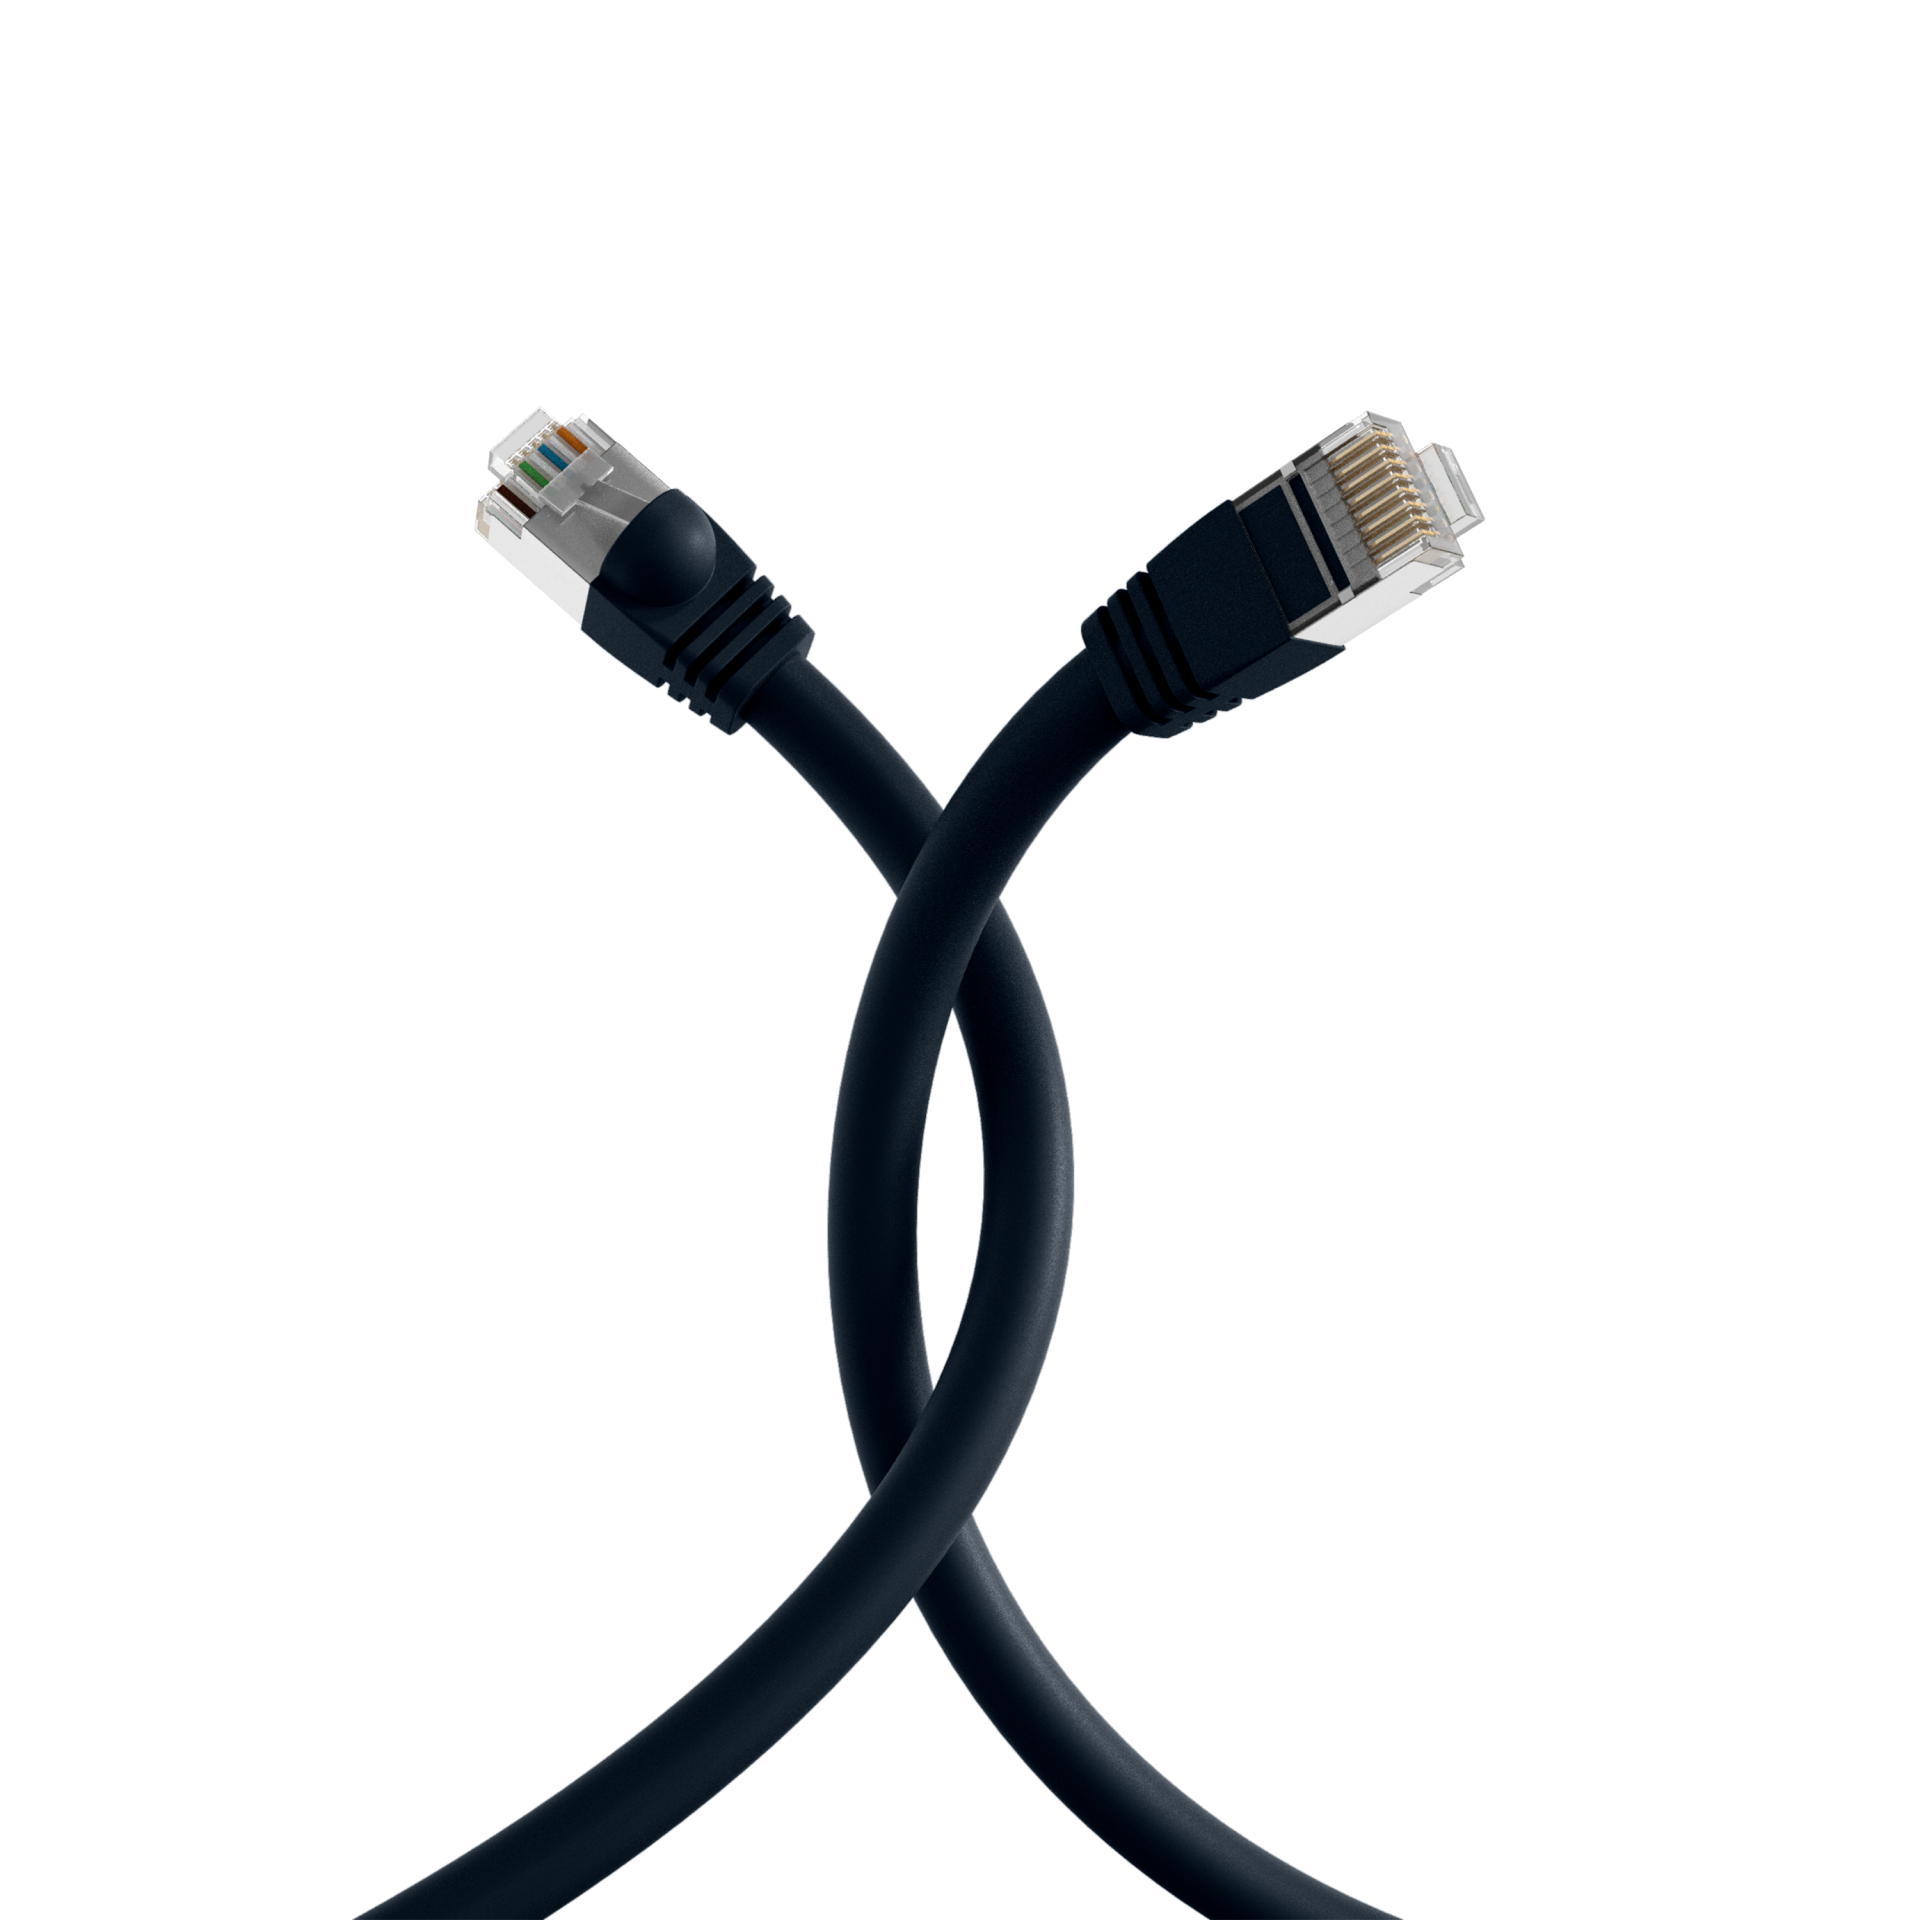 RJ45 Patch cable S/FTP, Cat.6, PVC, short boot, UL, 20m, black